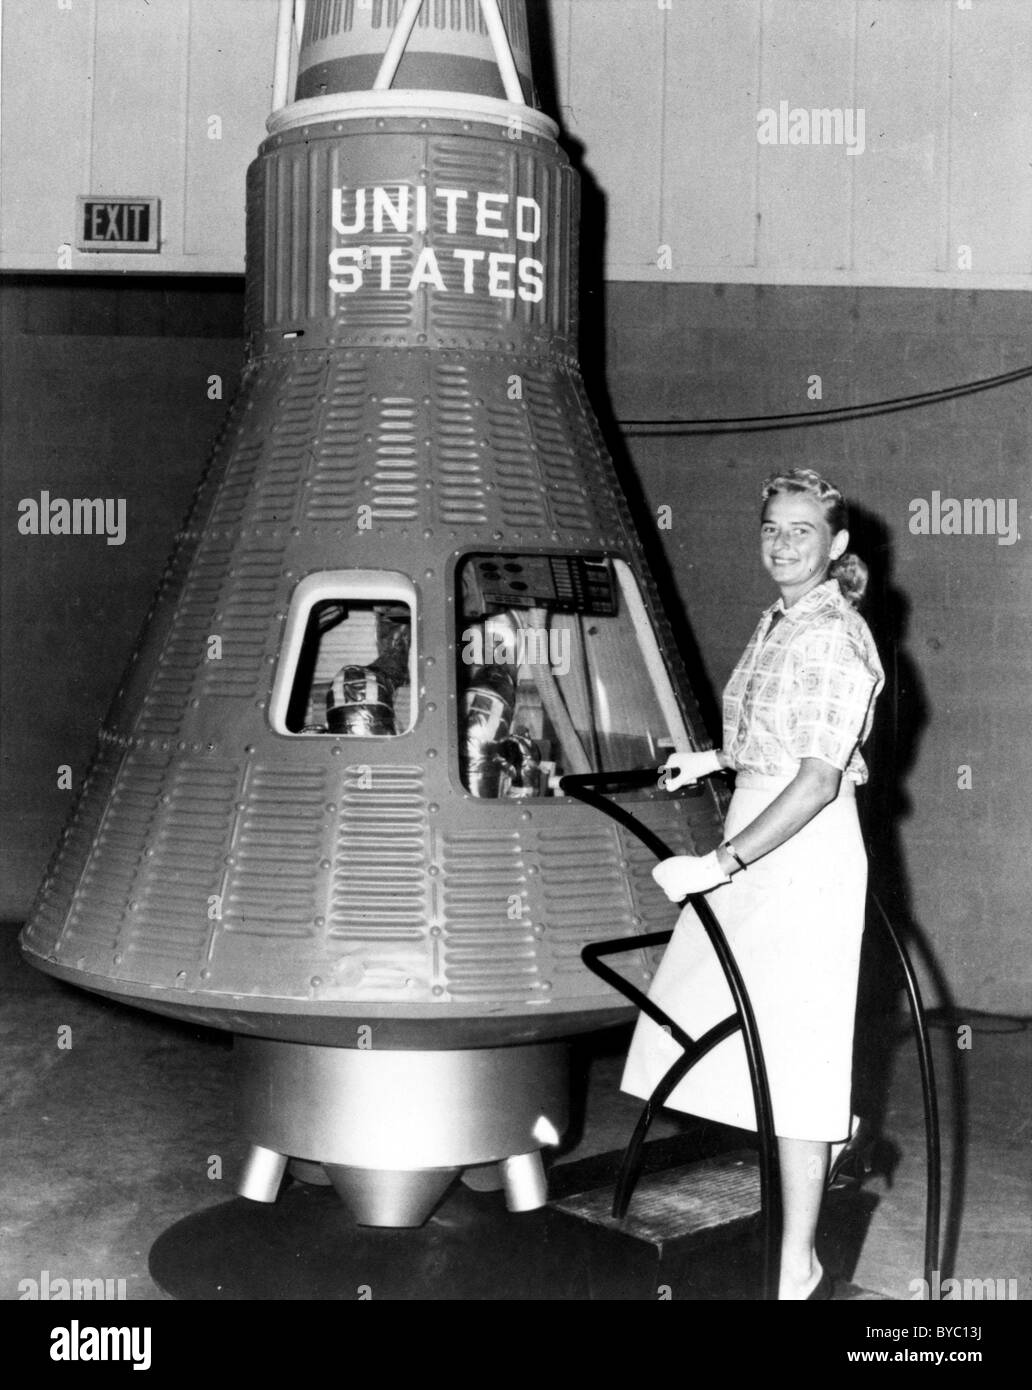 Jerrie Cobb, une Première Dame, stagiaire de l'astronaute pose à côté d'un vaisseau spatial Mercury capsule. Banque D'Images